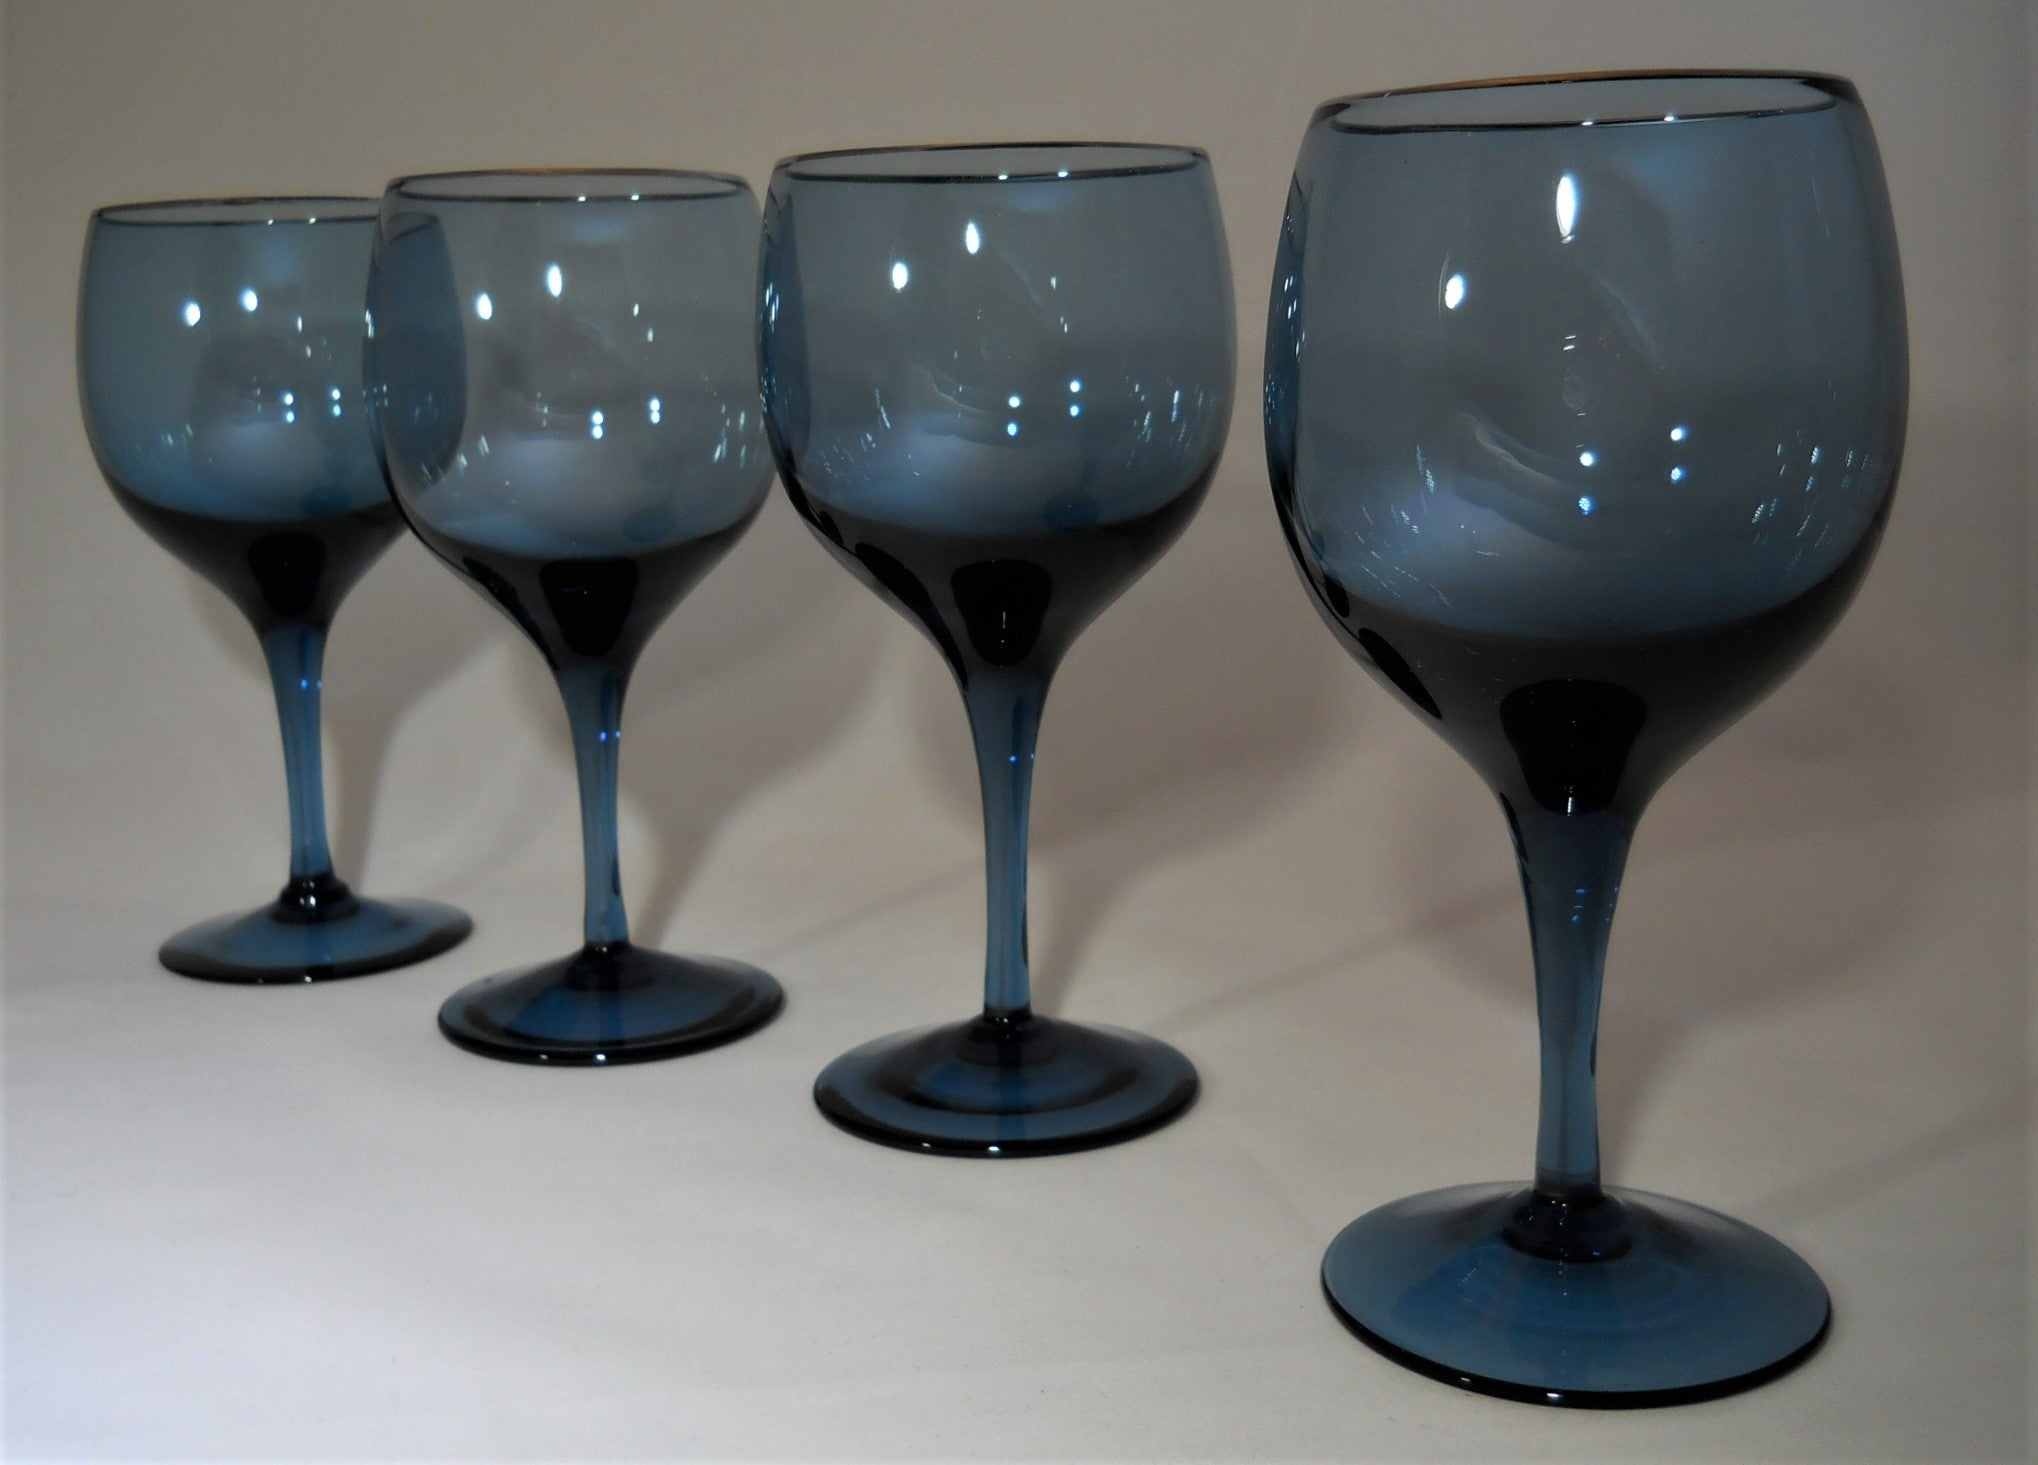 Lenox Wine Crystal Set of 4 Glasses